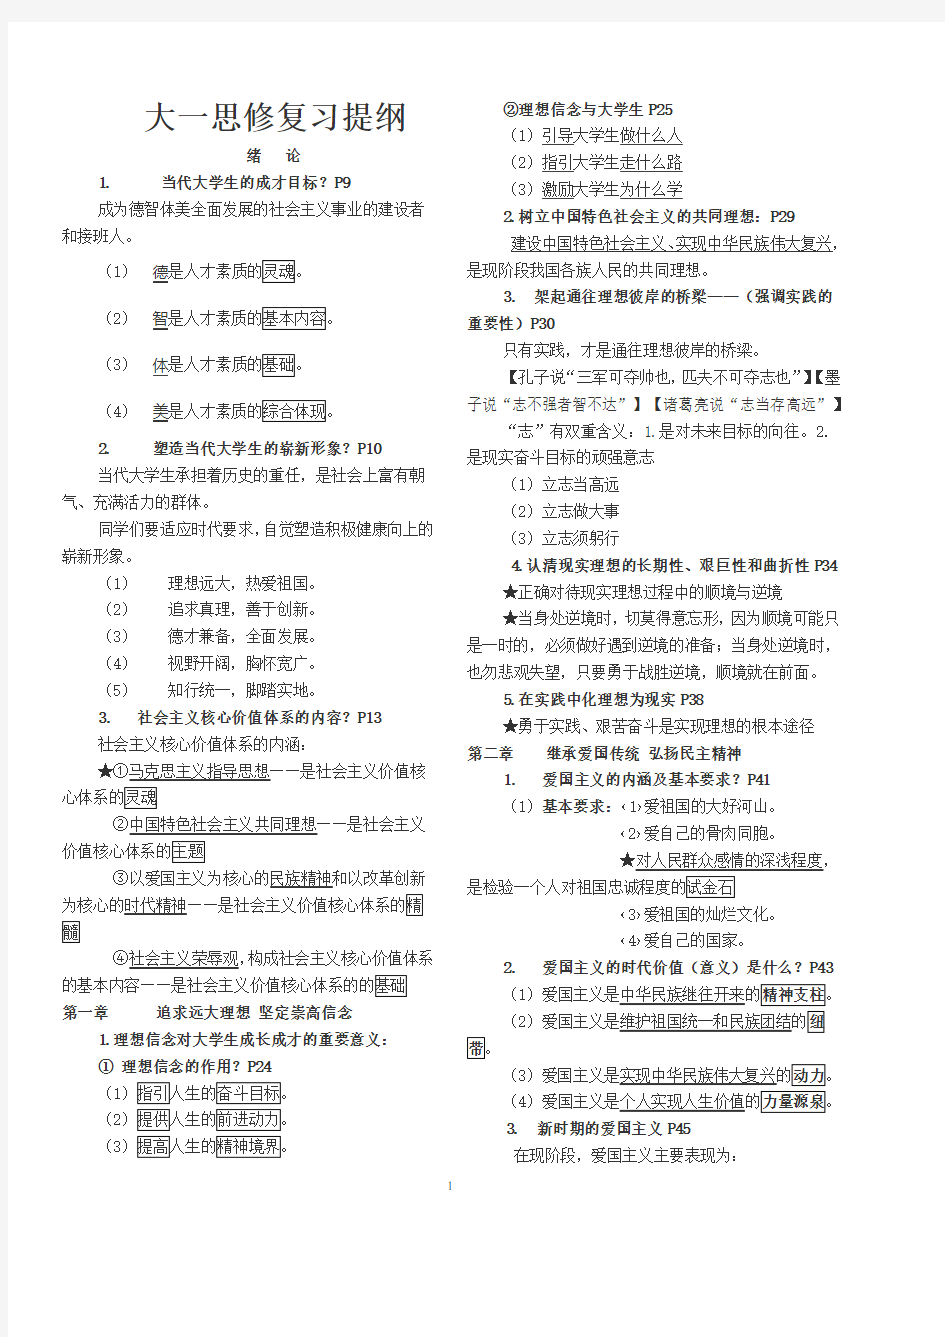 思修与法律基础复习提纲(2020年整理).pdf